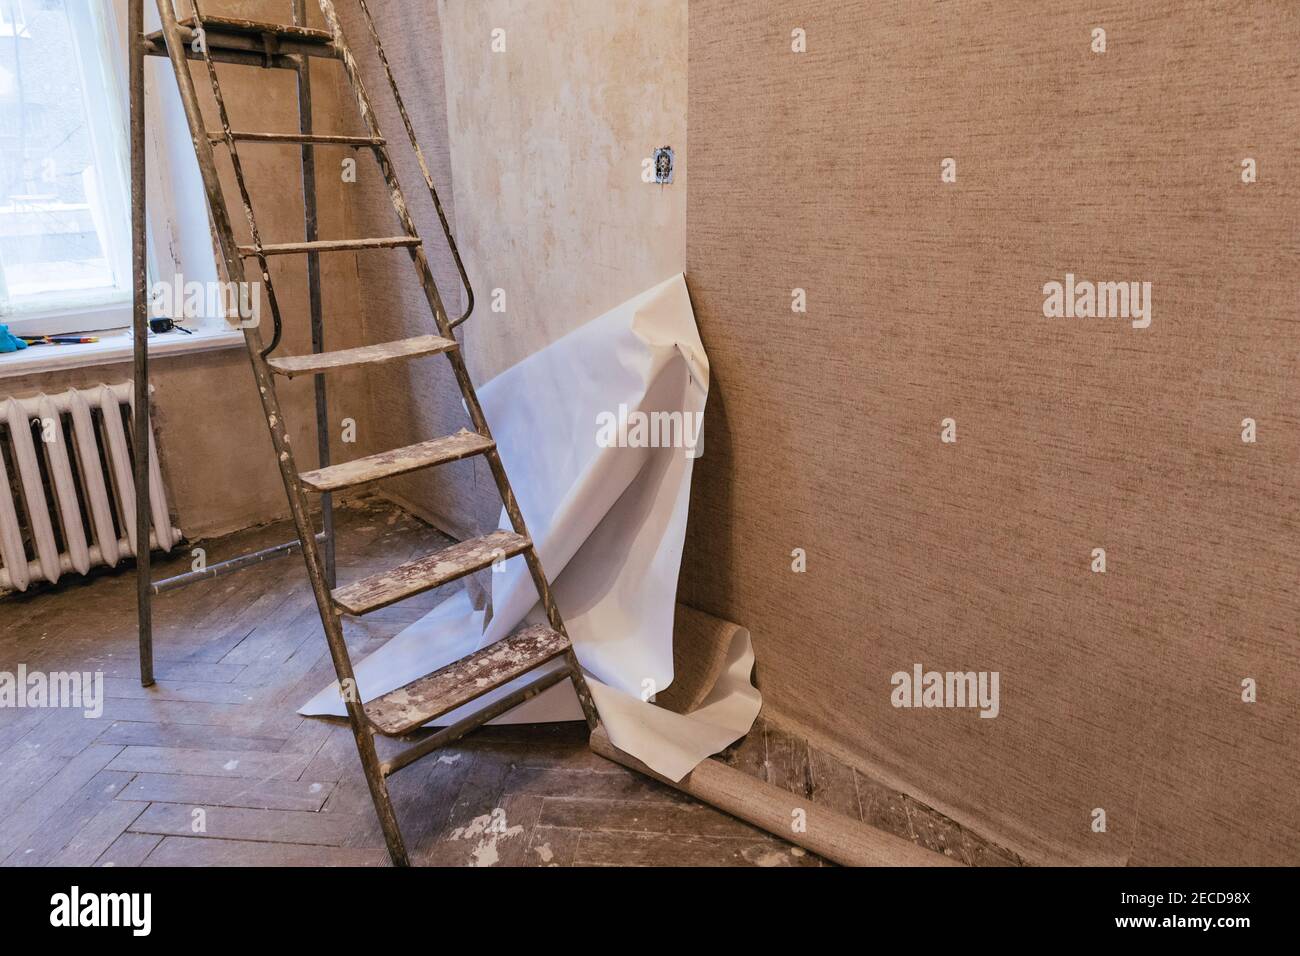 Unklemmt schlechte Arbeit kleben Tapete Rollen Vinyl Vorbereitung der  Oberfläche Wände Wohnung Renovierung Stockfotografie - Alamy